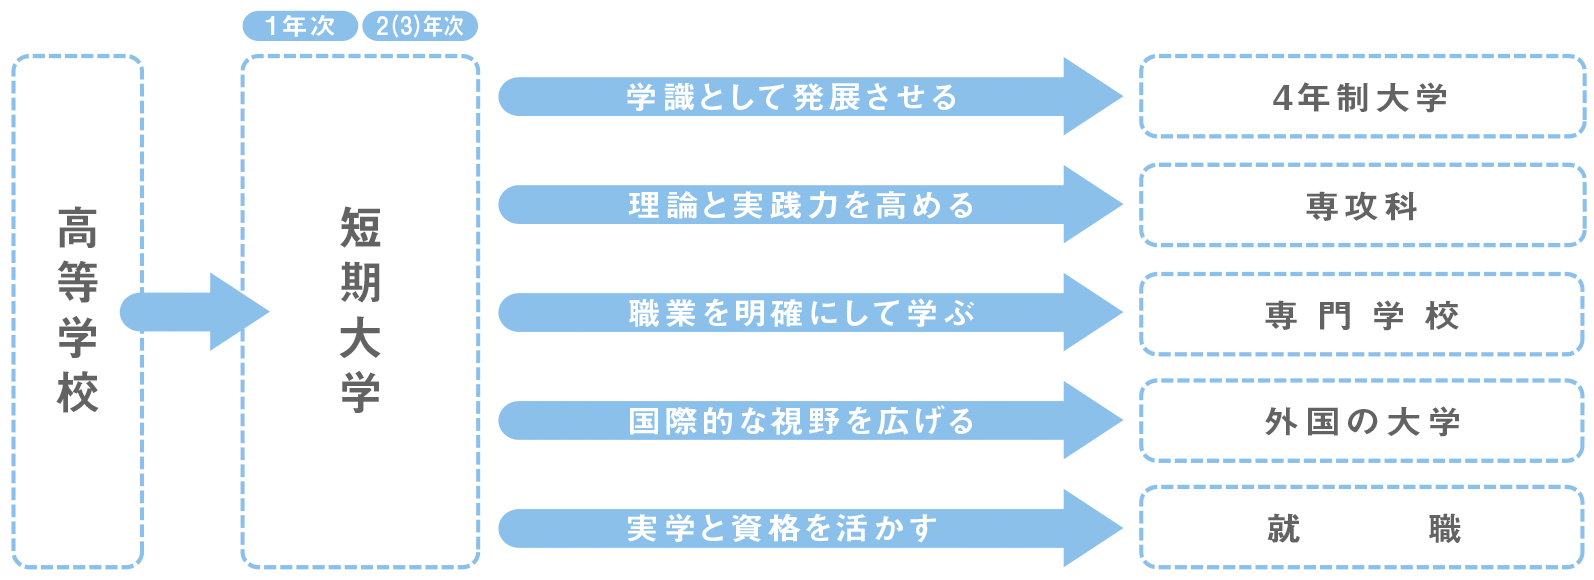 大学 短大 専門学校の違いとは それぞれの特徴やメリットを分かりやすく解説 Js日本の学校